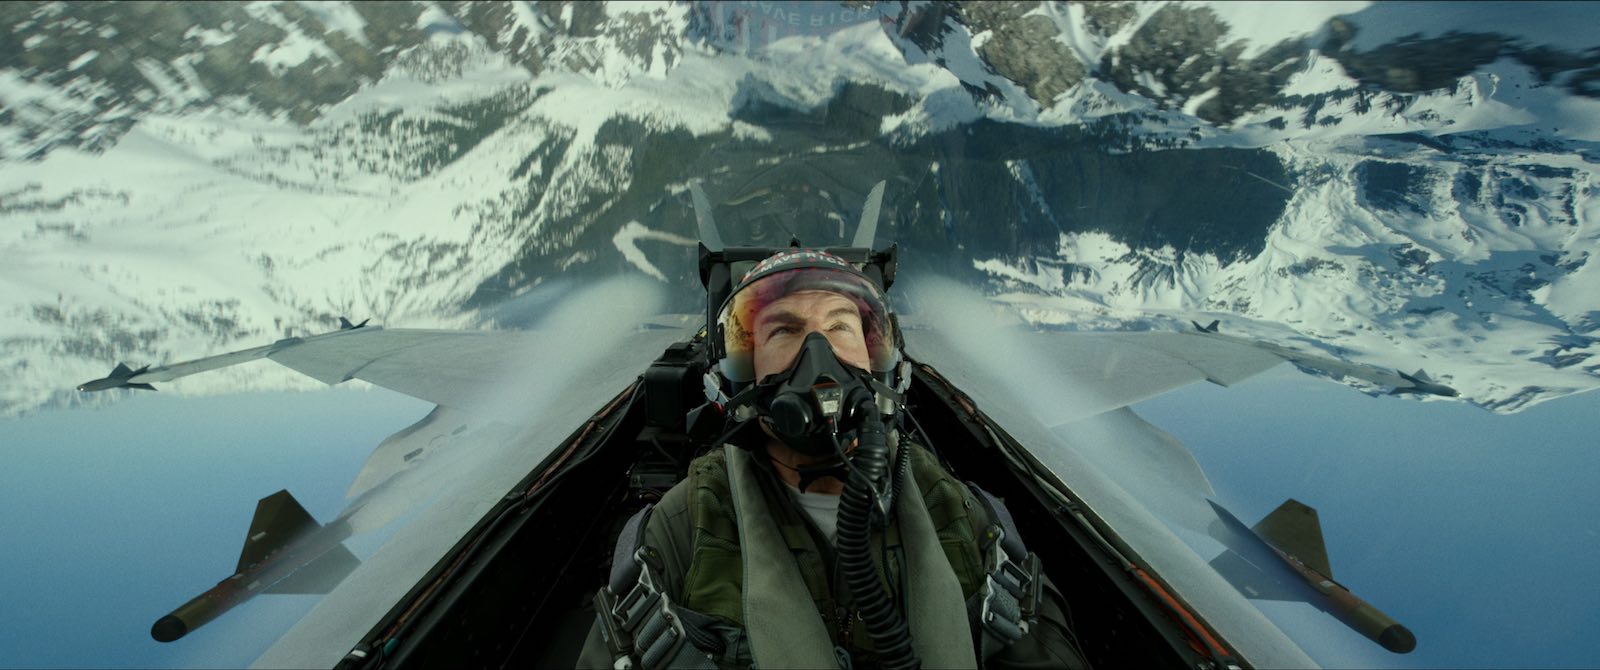 Tom Cruise, alias Maverik aux commandes d'un F/A-18 Hornet